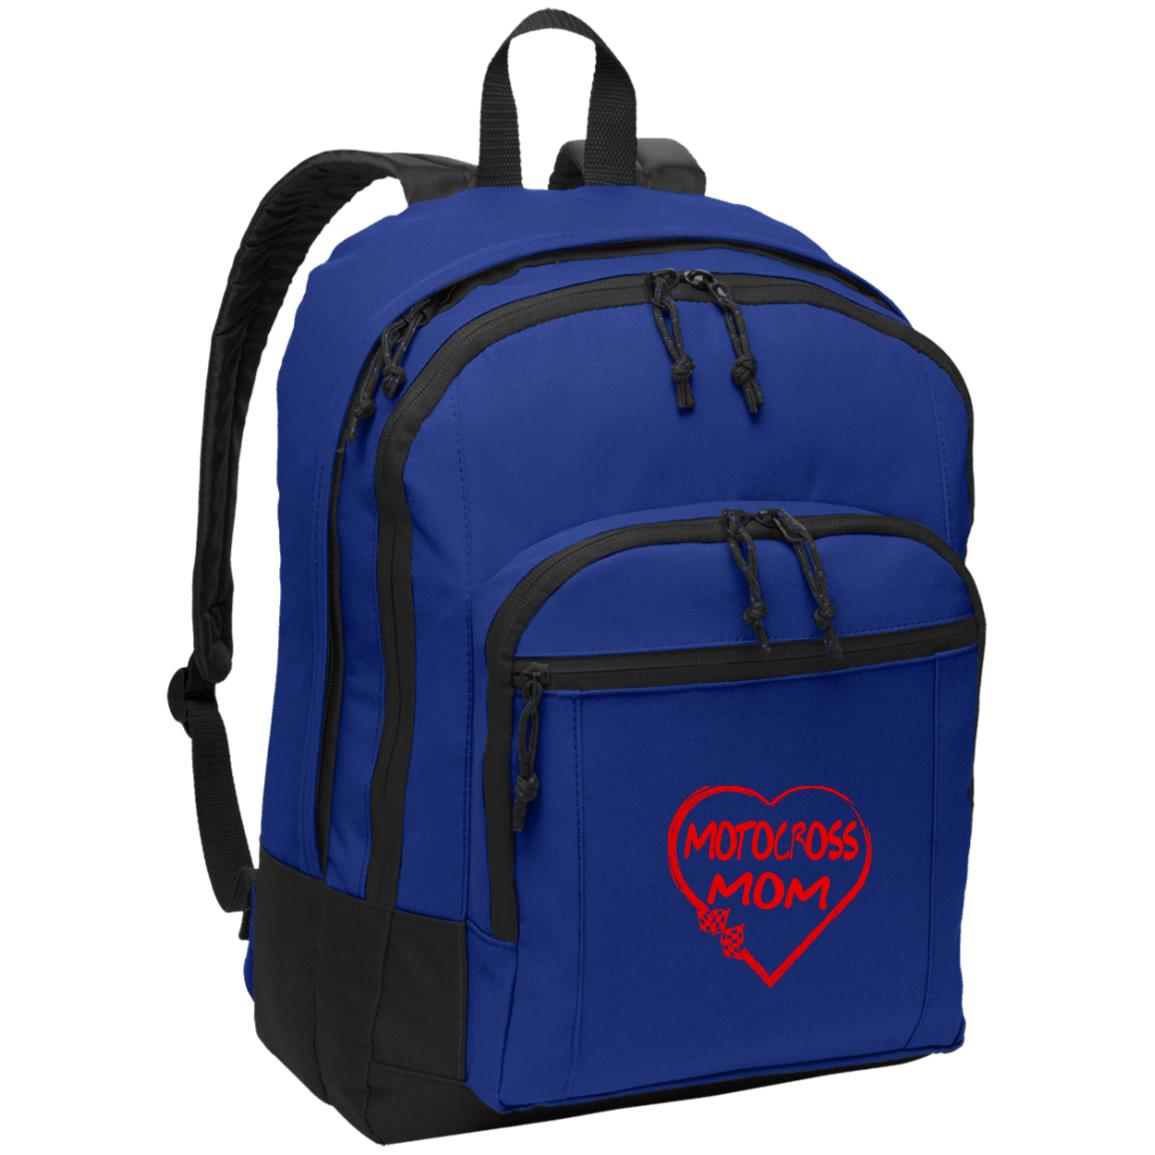 Motocross Mom Heart Basic Backpack